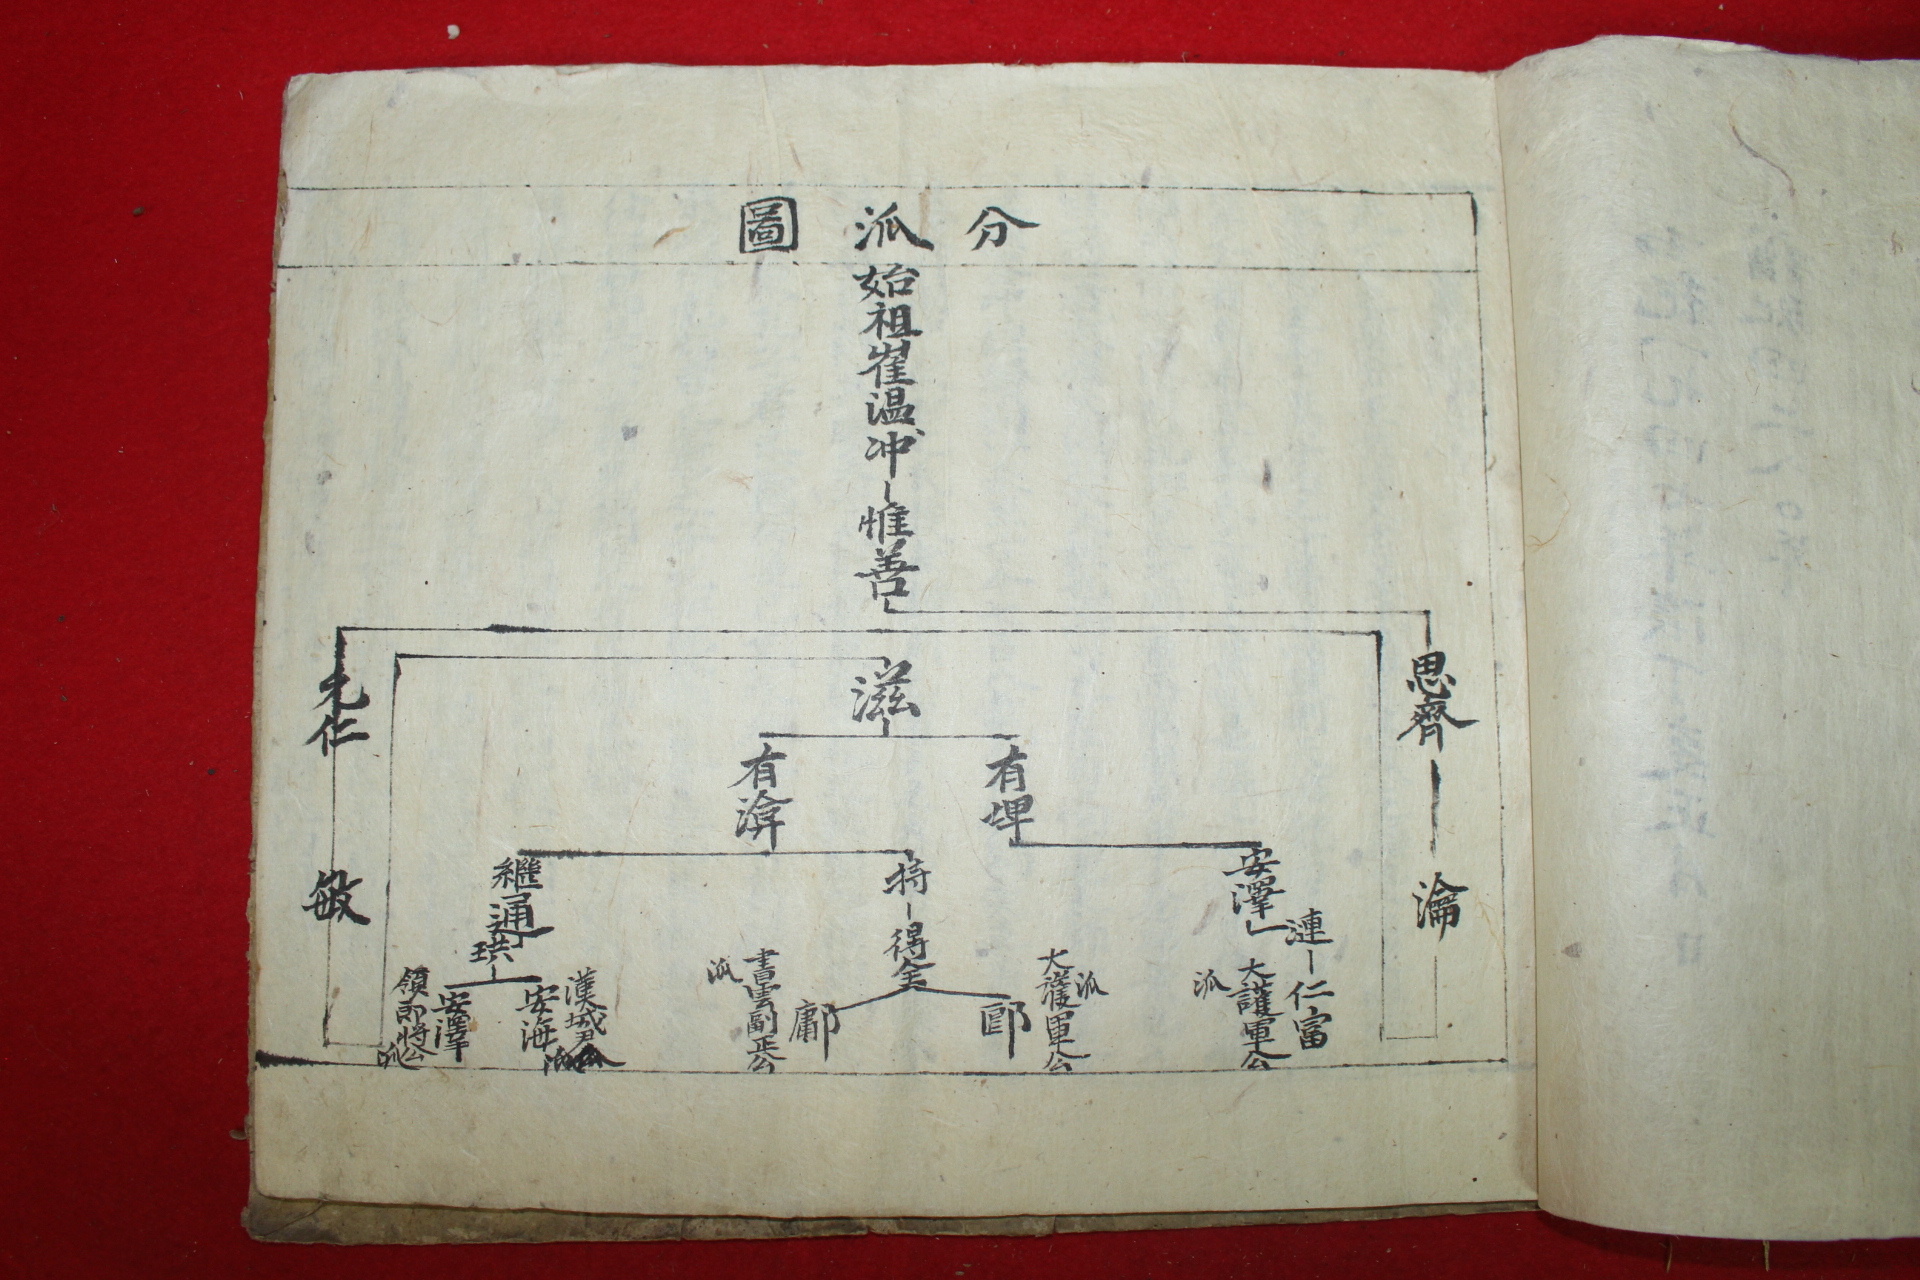 1947년 필사본 해주최씨가보(海州崔氏家譜) 한성윤공파 1책